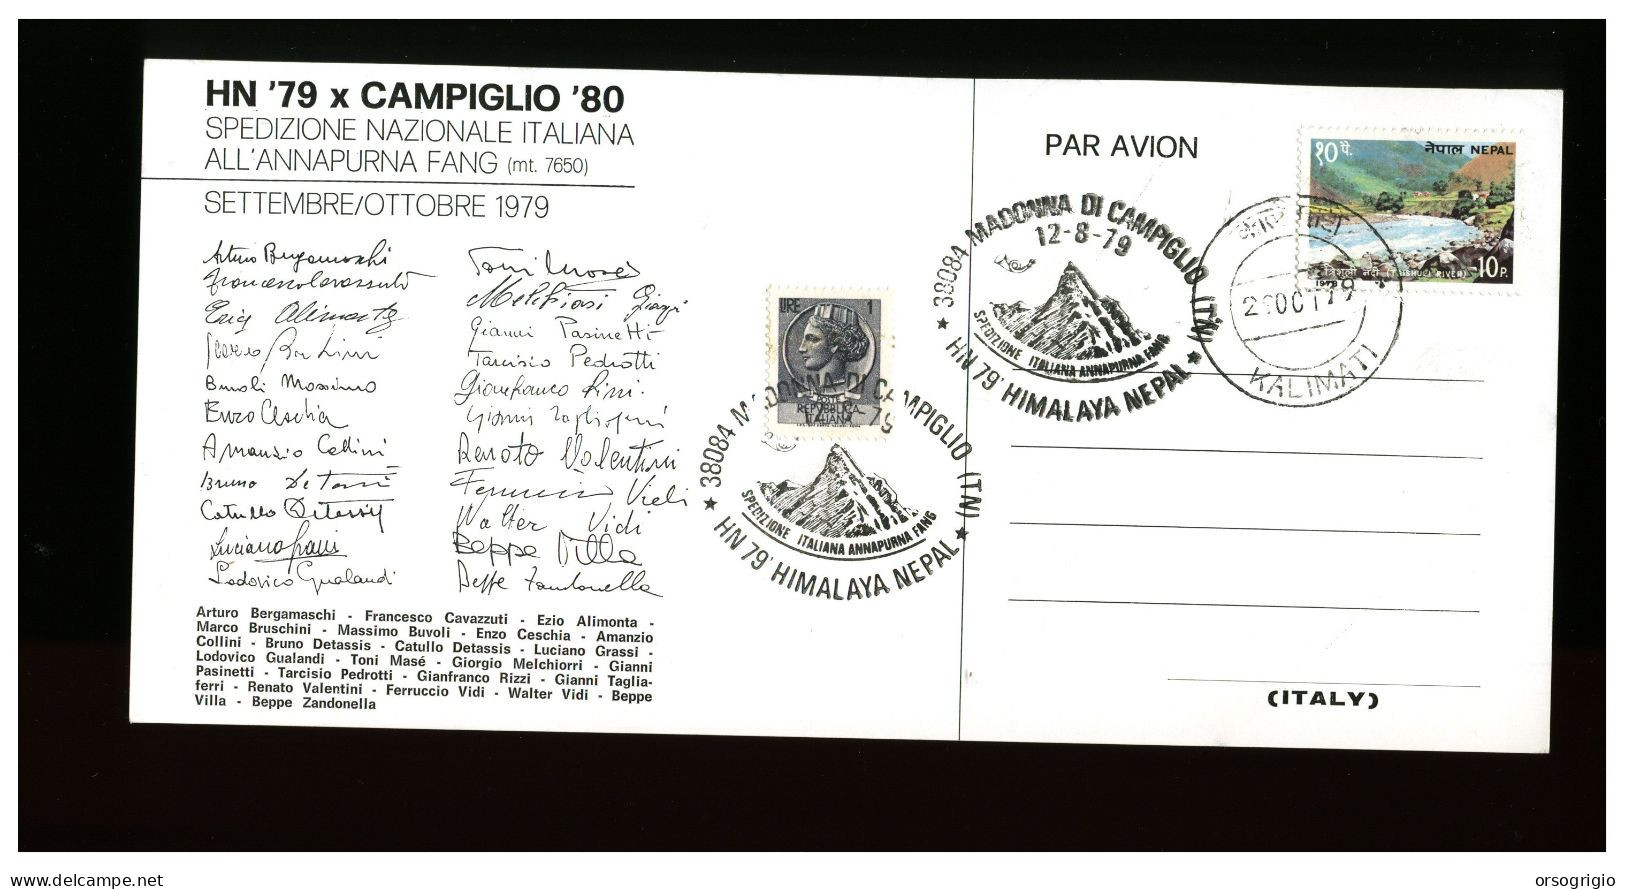 ITALIA - 1979 - MADONNA DI CAMPIGLIO - SPEDIZIONE NAZIONALE ALL'ANNAPURNA FANG - HIMALAYA NEPAL - Bergsteigen